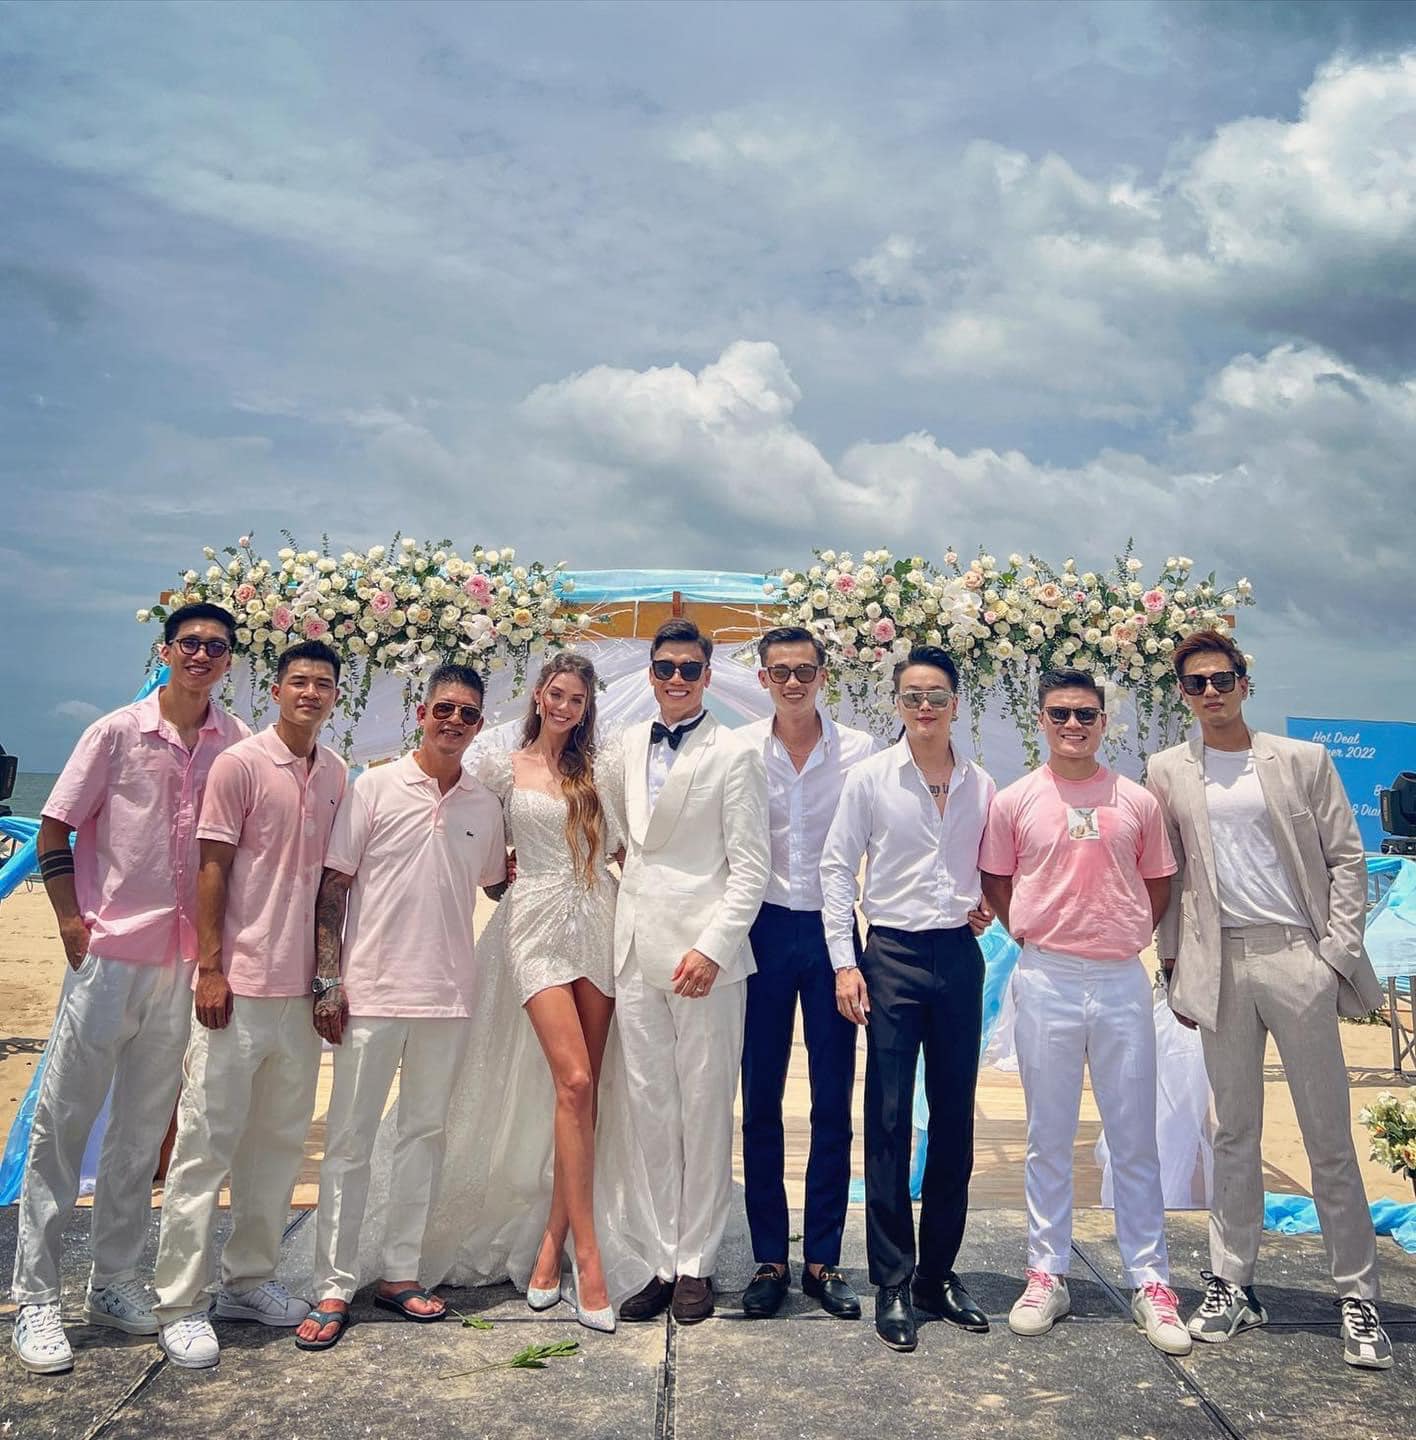 HOT: Thủ môn Bùi Tiến Dũng tổ chức đám cưới với bạn gái Tây, dàn tuyển thủ Việt Nam đều góp mặt chung vui - Ảnh 6